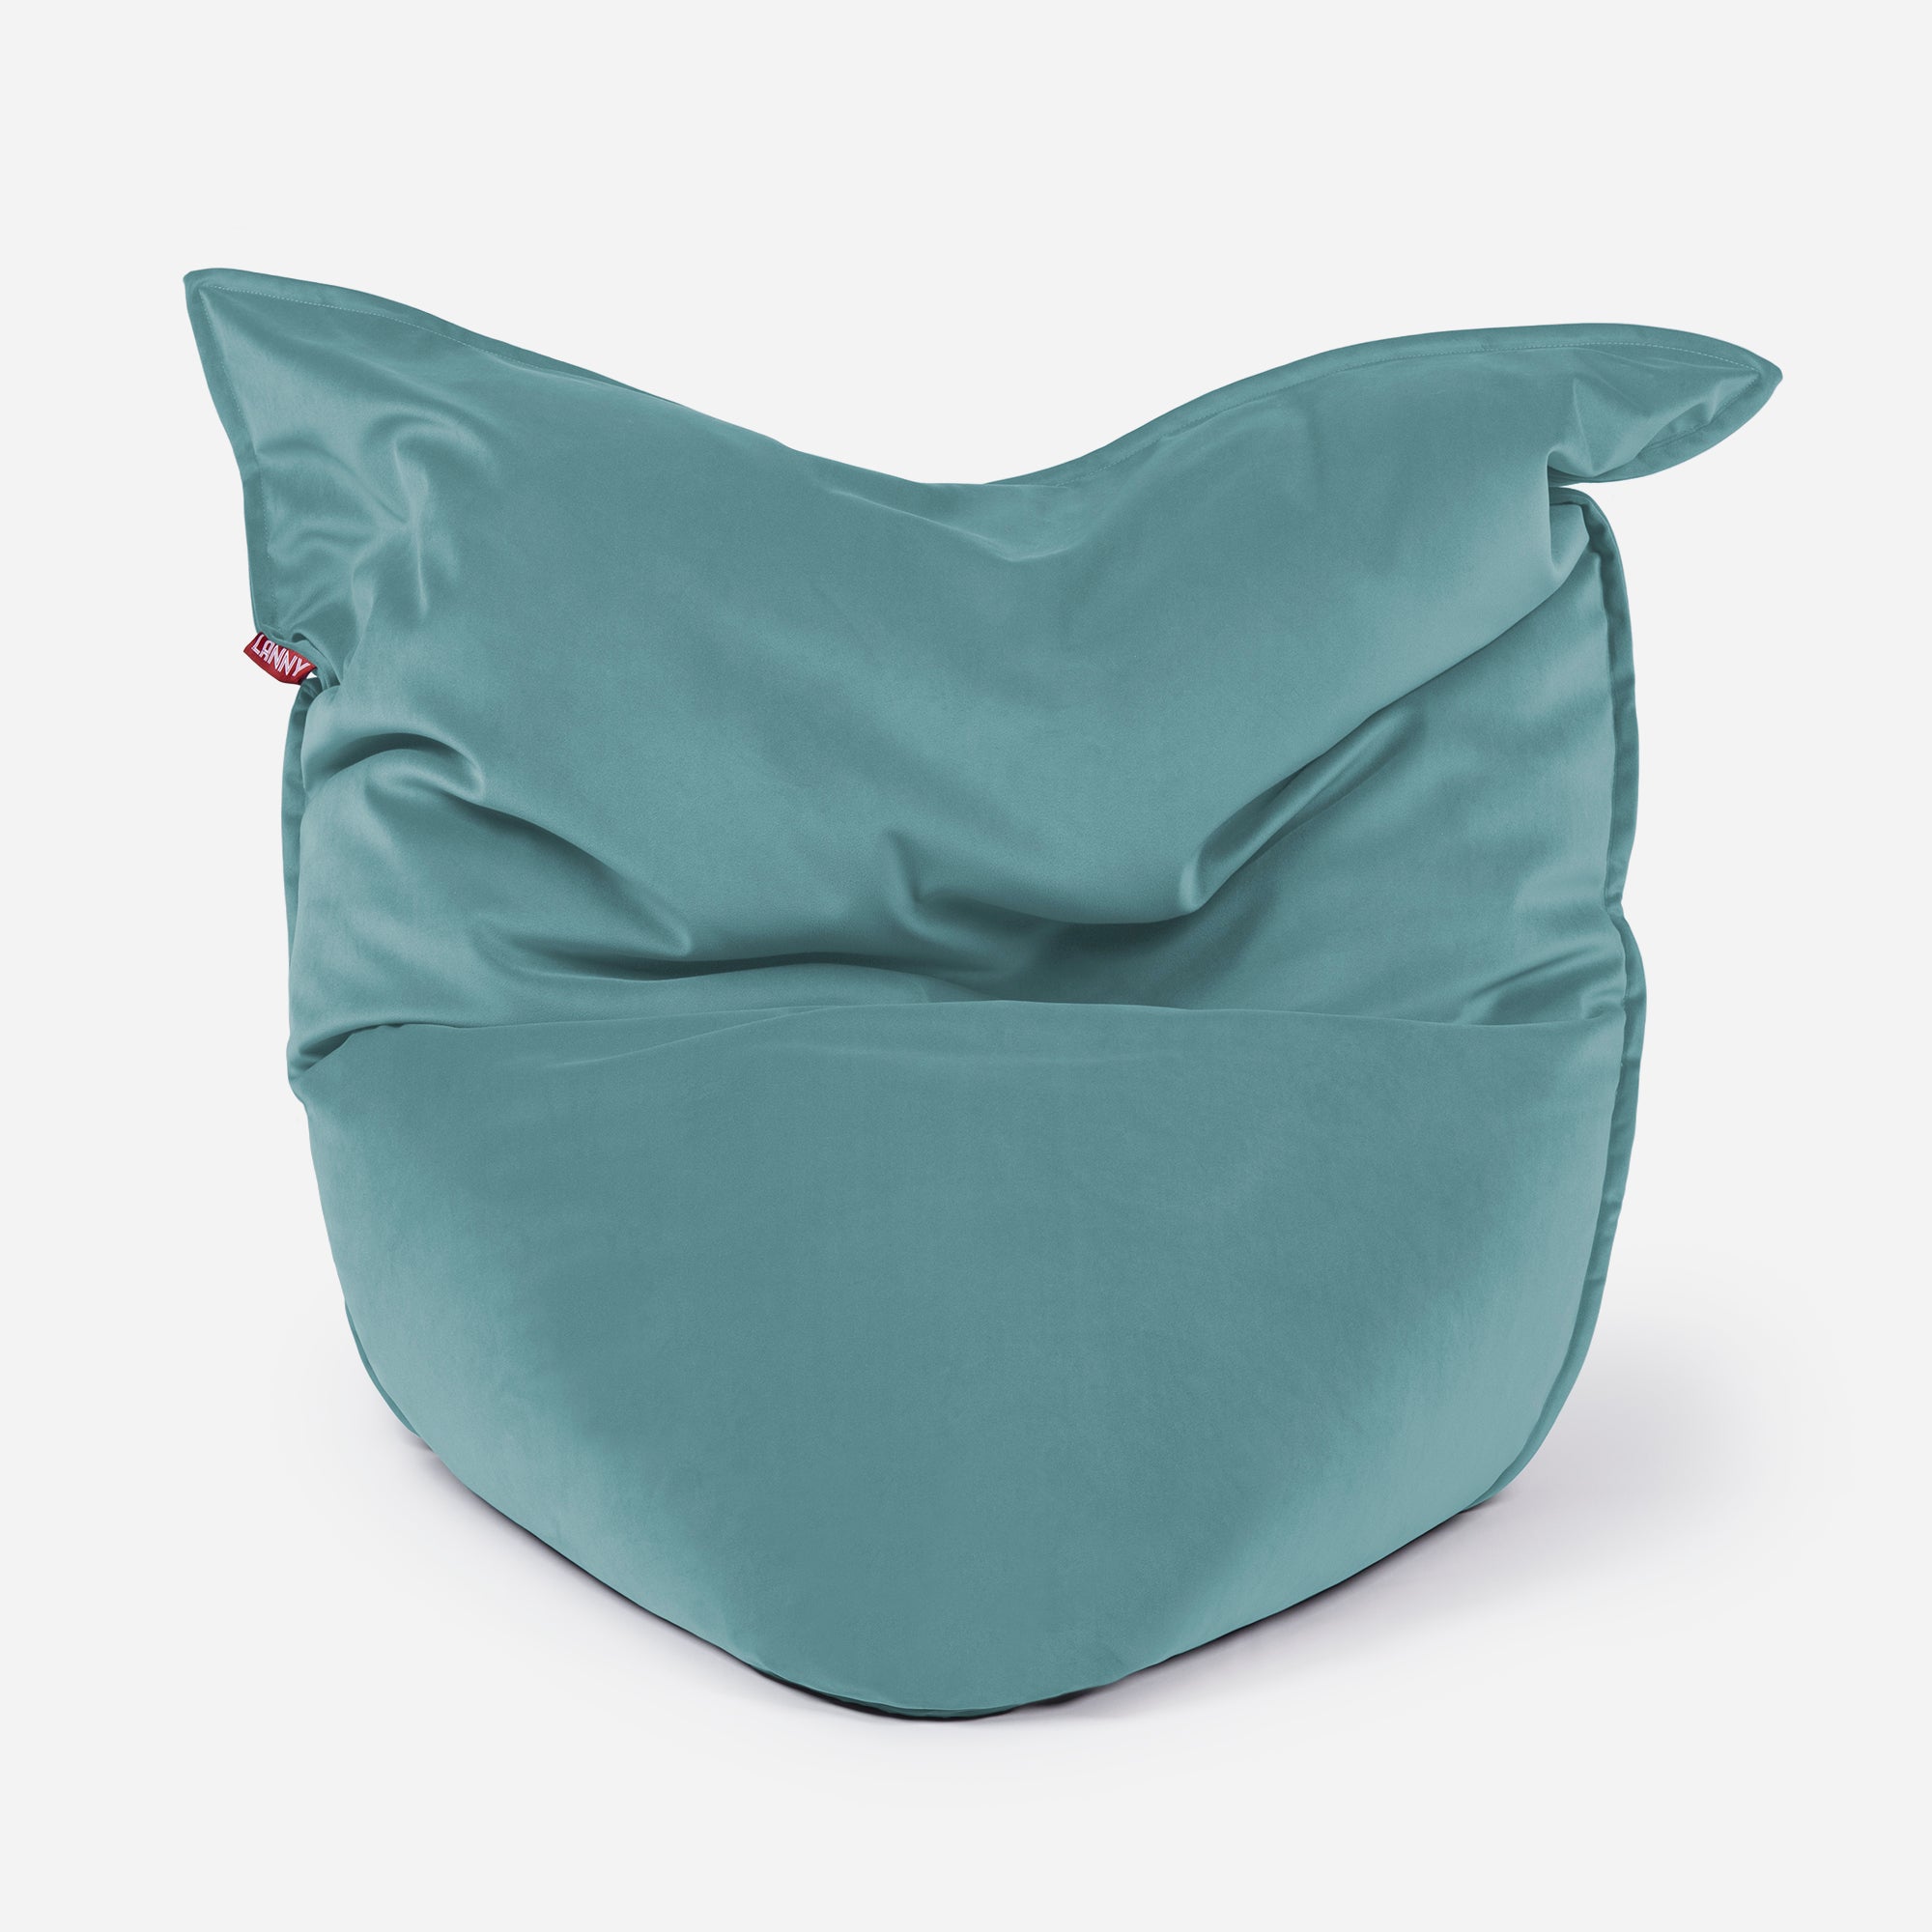 Sloppy Velvet Turquoise Bean bag